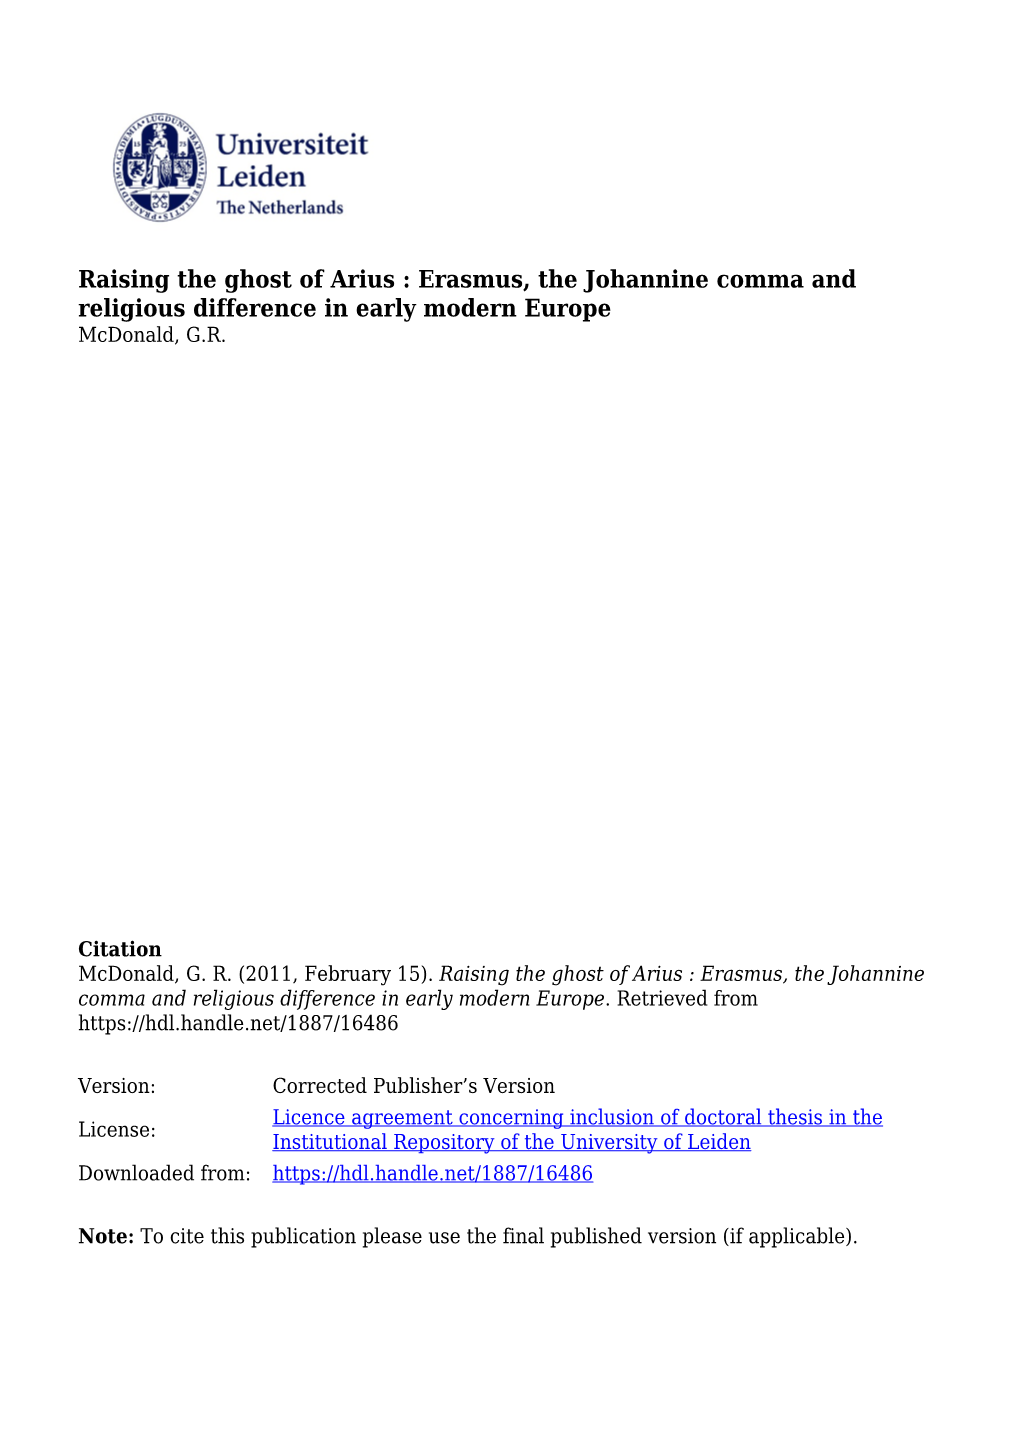 Raising the Ghost of Arius: Erasmus, the Johannine Comma and Religious